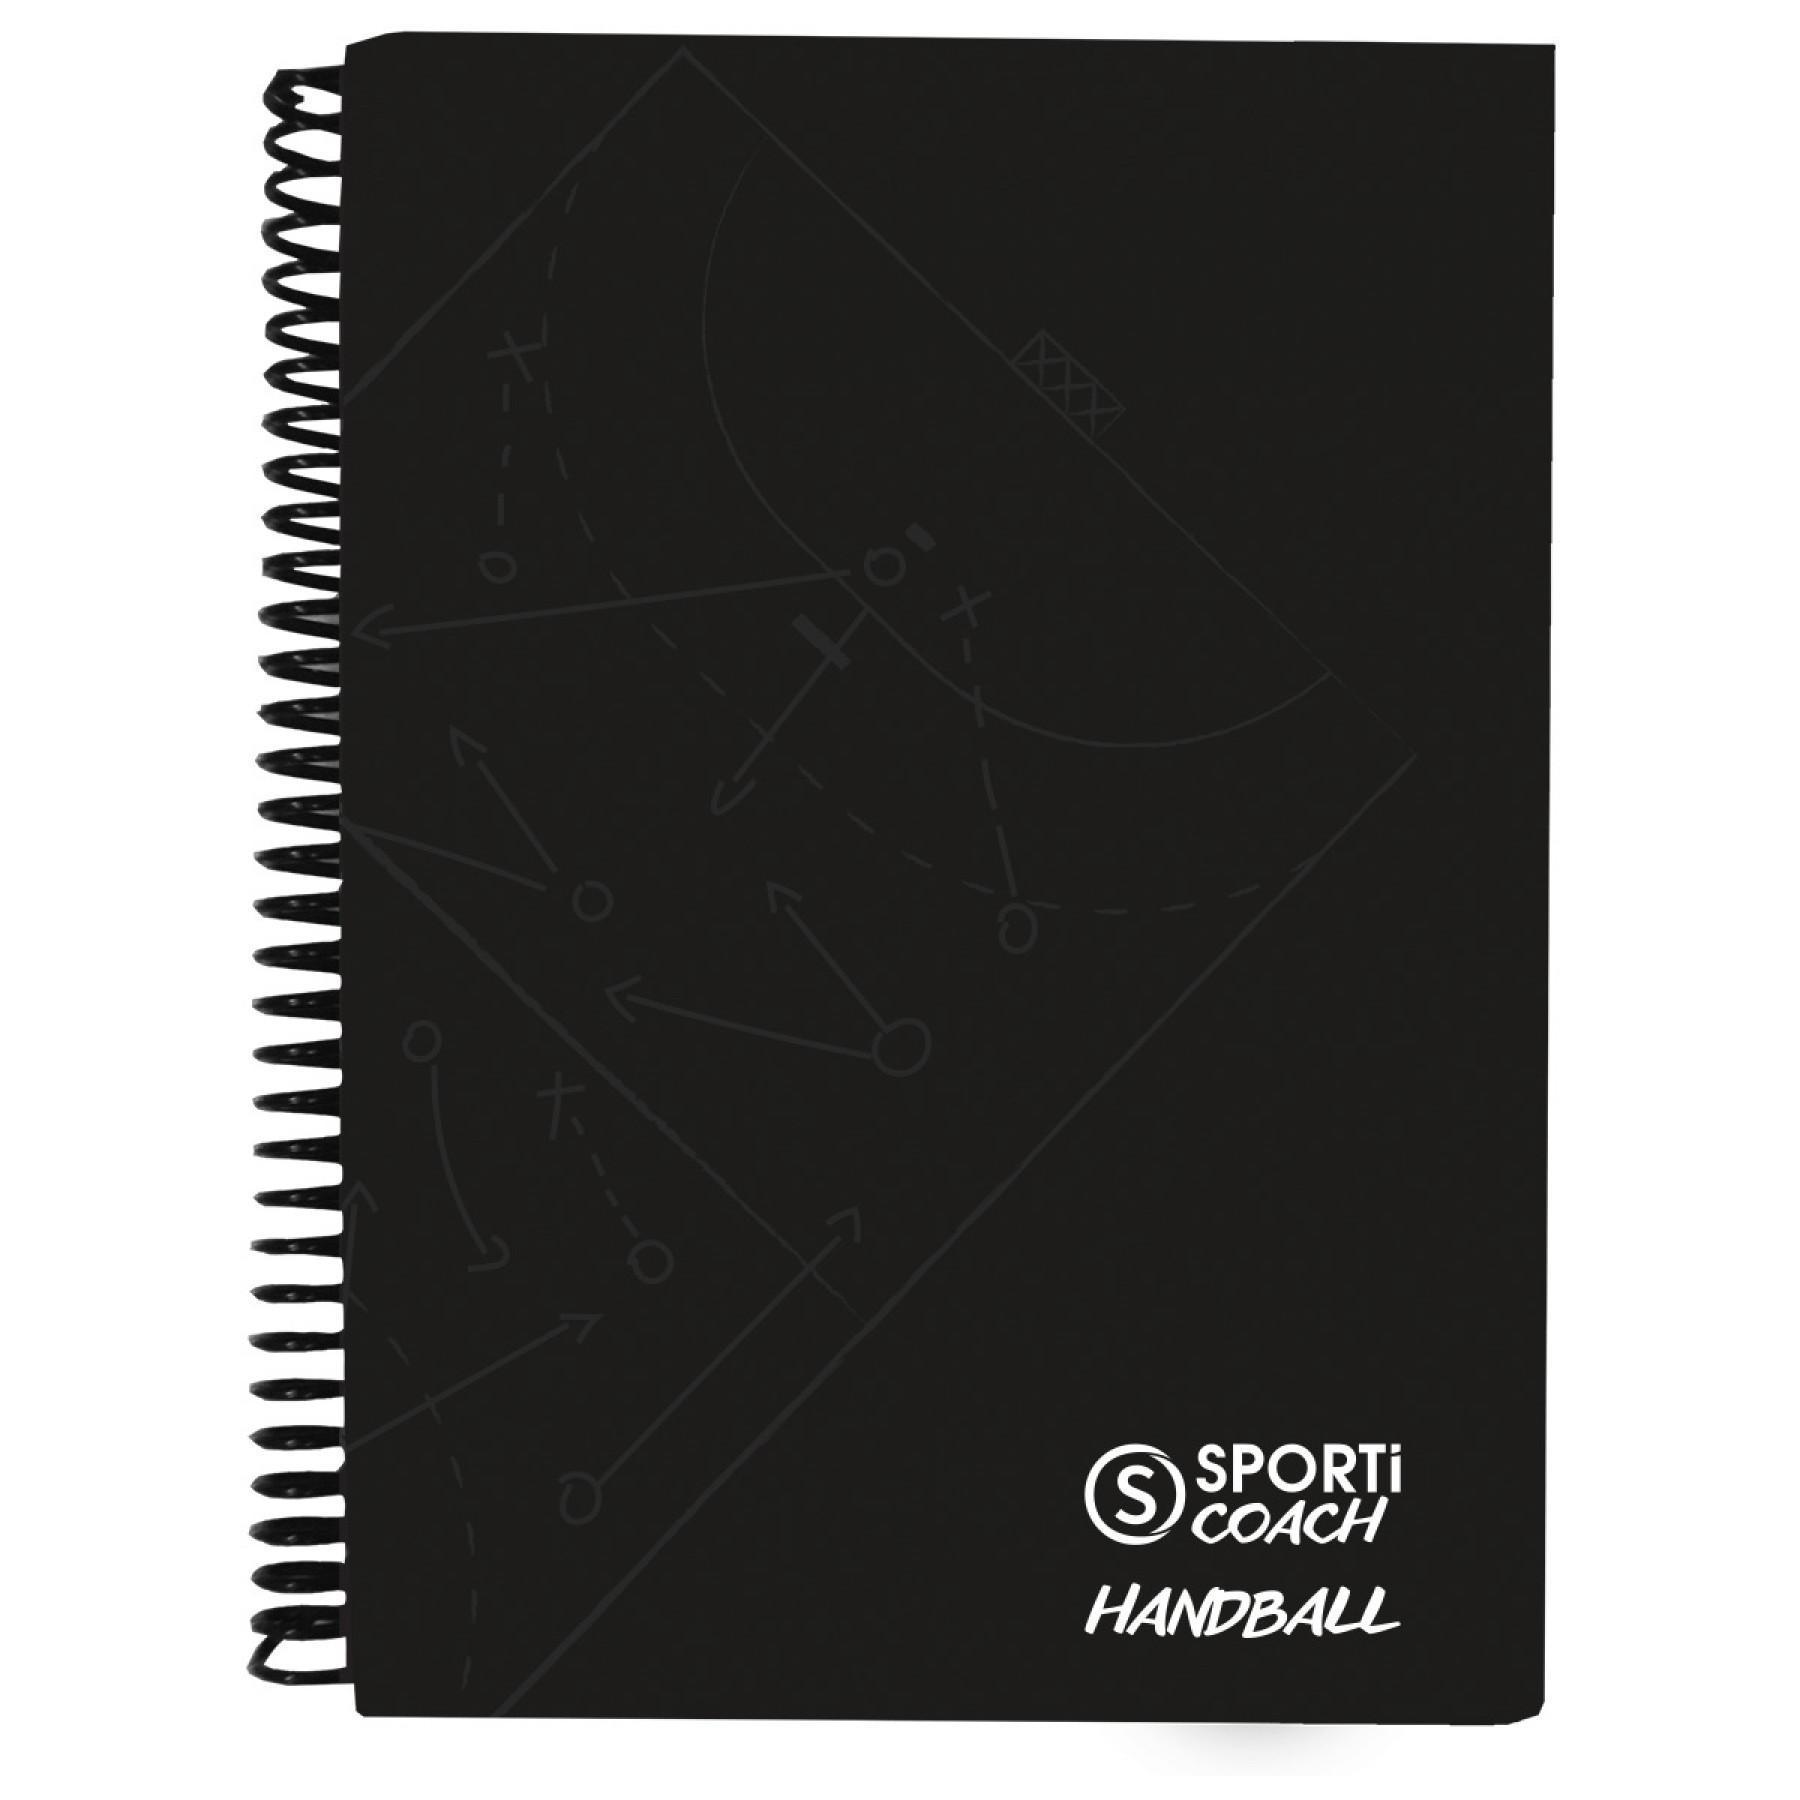 Spiral handball coach notebook a5 Sporti